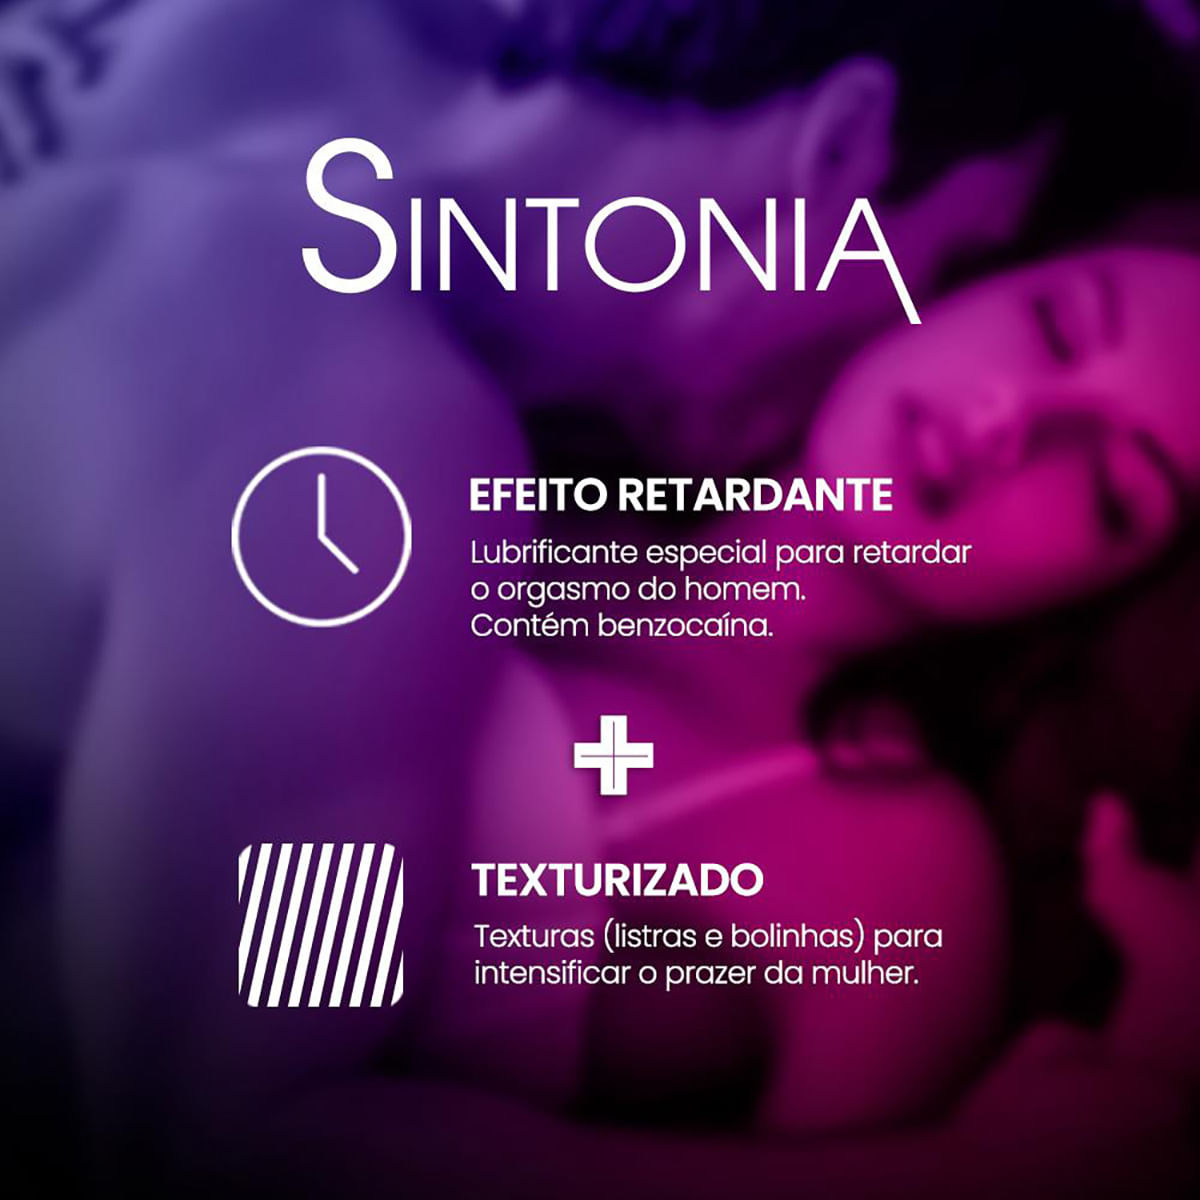 Orgasmo em Sintonia Preservativo Estimulante para Ela e Retardante para Ele com 2 unidades Jontex